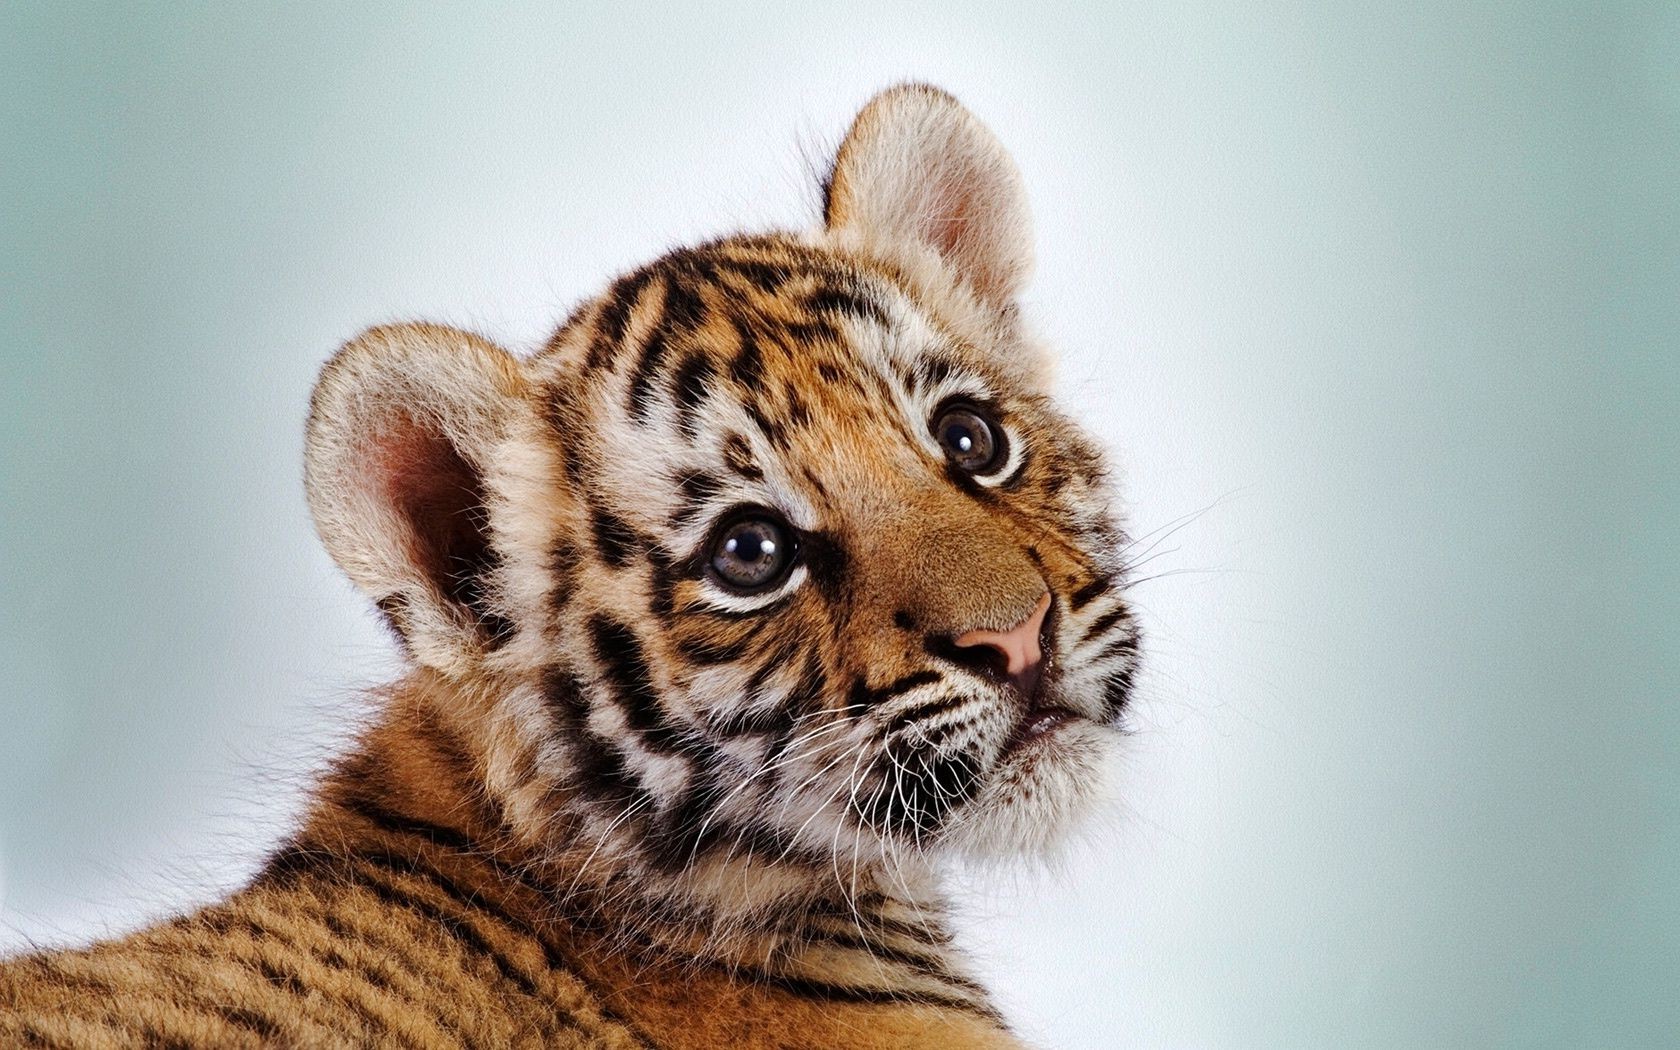 тигры кошка животное млекопитающее мех тигр дикой природы хищник портрет полоса глаз мясоед милые глядя ребенок охотник зоопарк волчонок большой ус